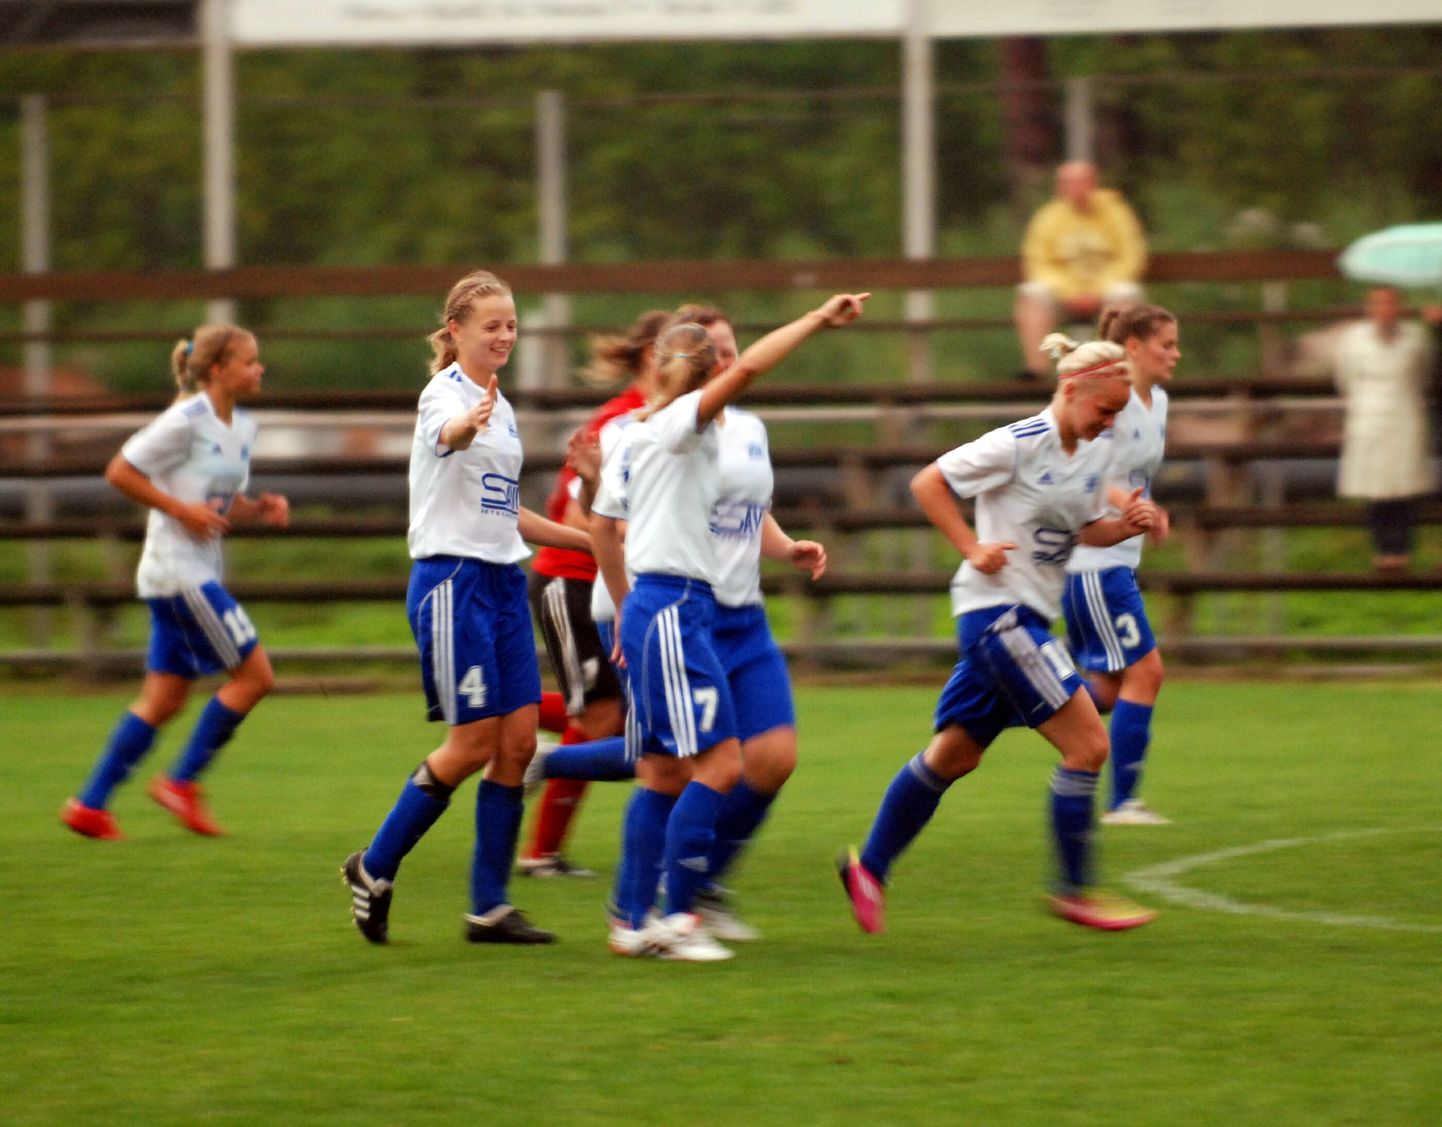 Nädalavahetusel kindlustatud tänavune Eesti meistri tiitel andis Pärnu jalgpalliklubi naiskonnale jõudu südikaks esinemiseks Sloveenias UEFA naiste meistrite liiga alagrupiturniiril.